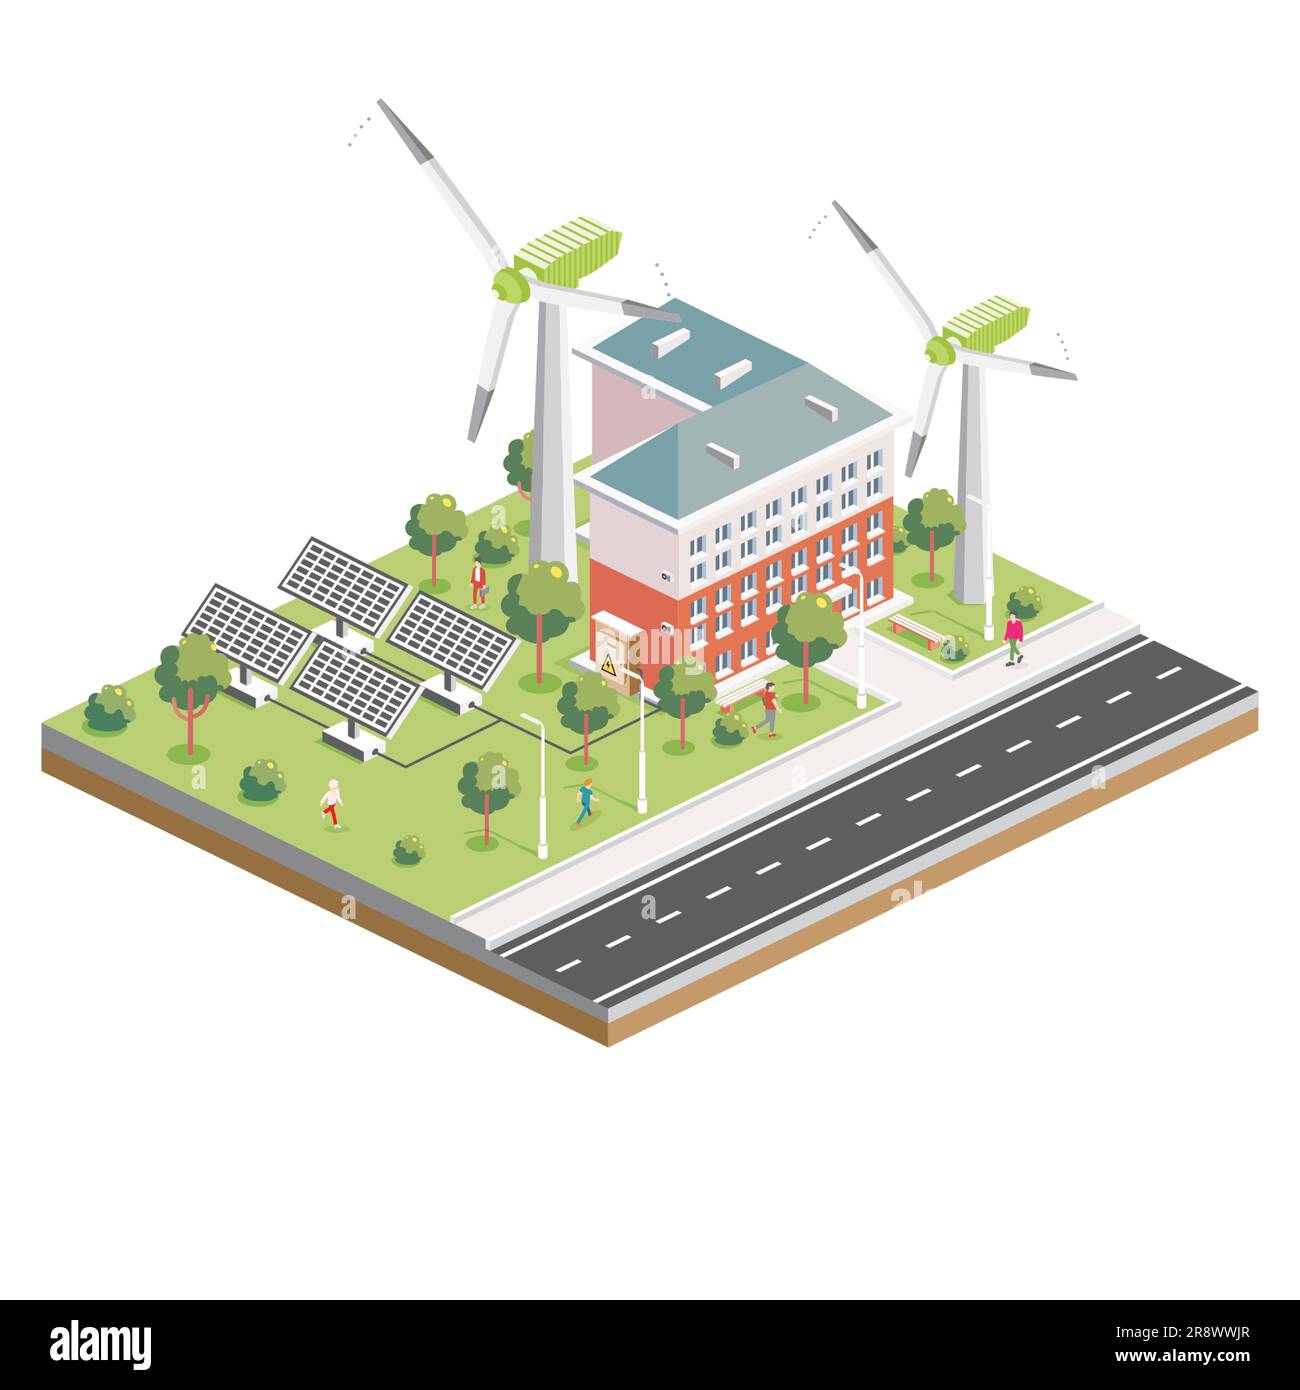 Pannelli solari isometrici con turbina eolica. Green Eco-friendly House. Elemento infografico. Illustrazione vettoriale. Architettura cittadina isolata sul retro bianco Illustrazione Vettoriale